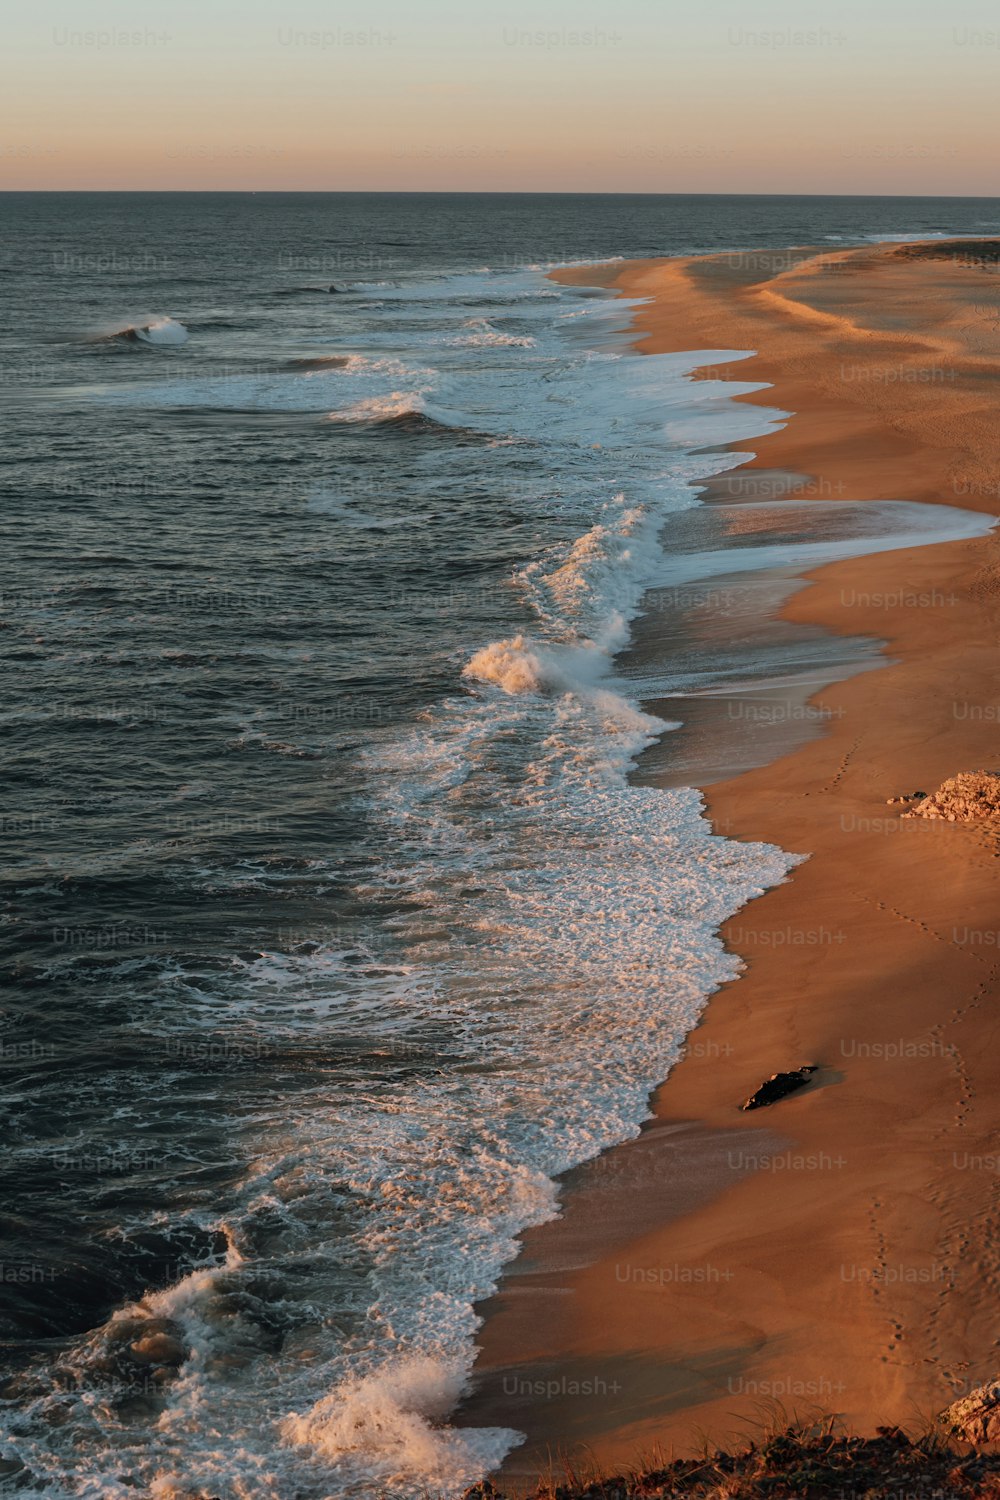 Blick auf einen Strand mit Wellen, die vom Meer kommen